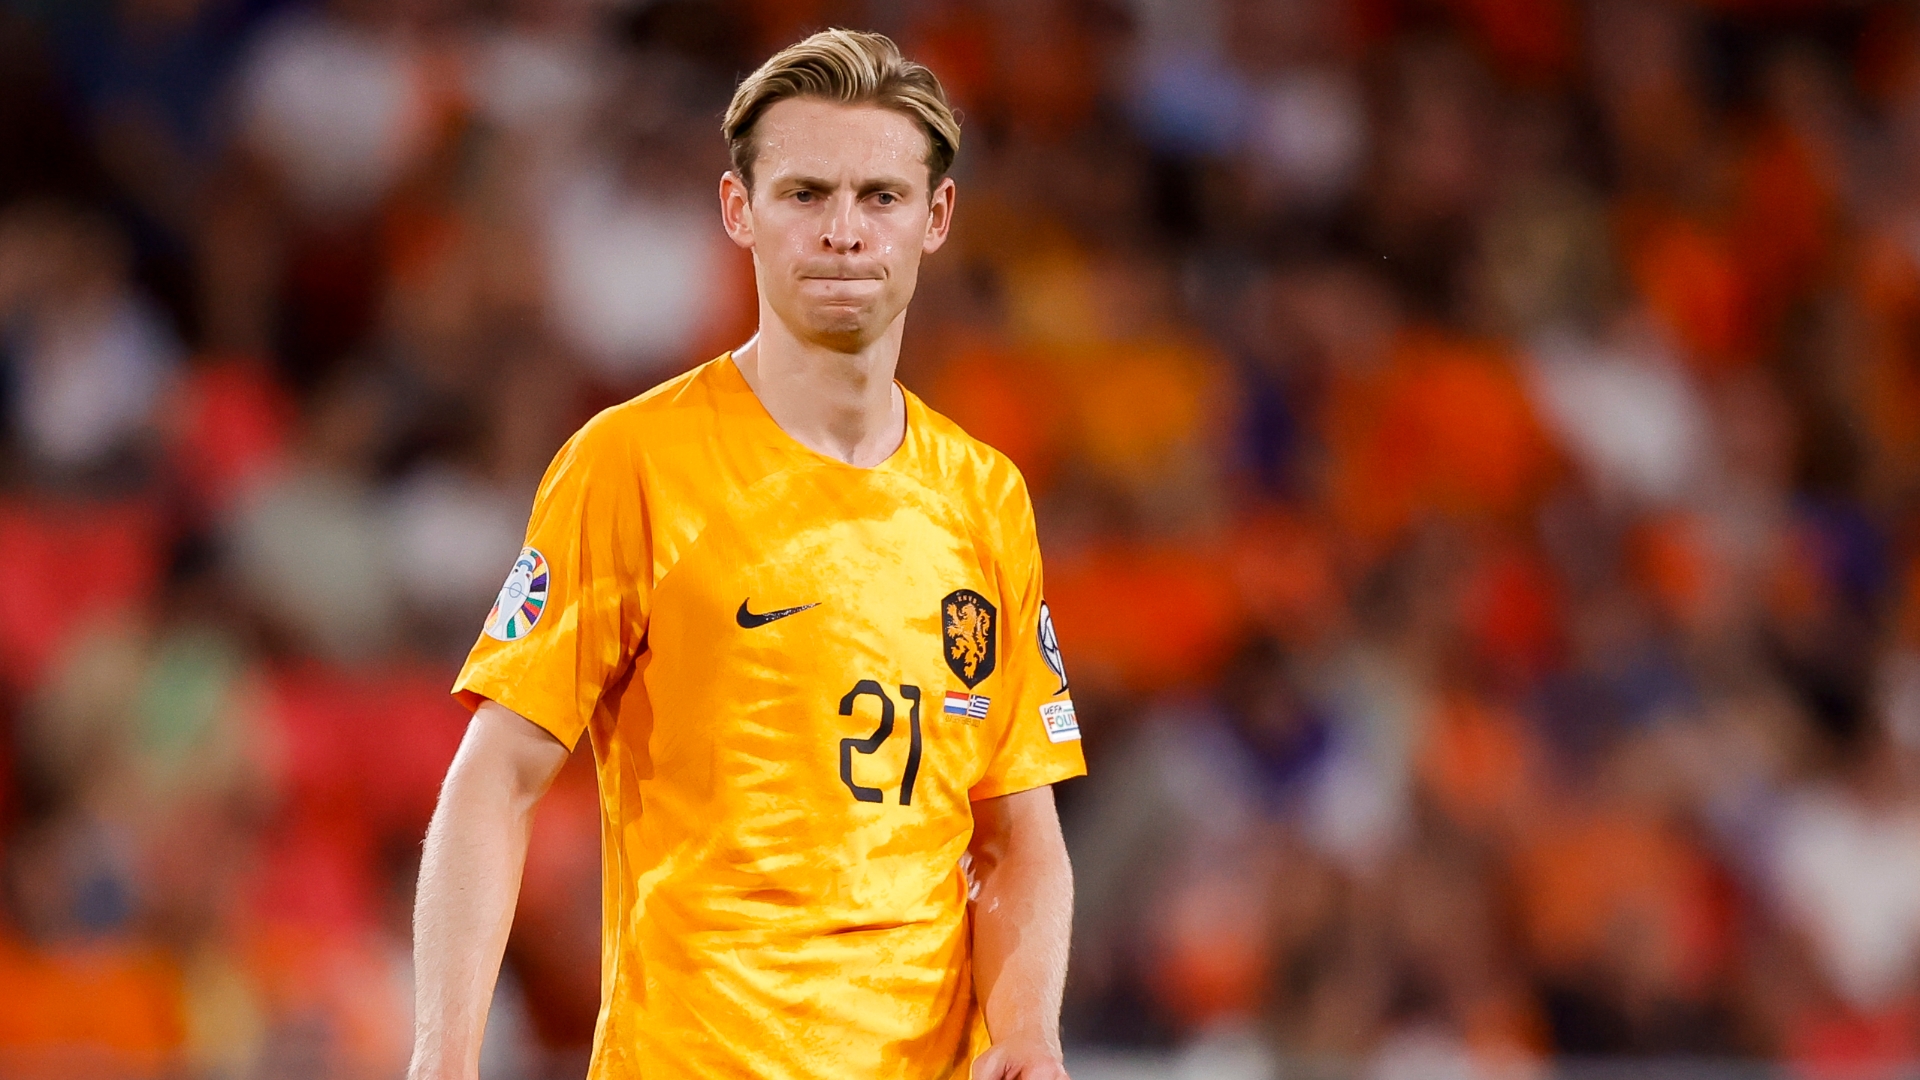 Melchiot: De Jong injury a 'big blow' for the Netherlands